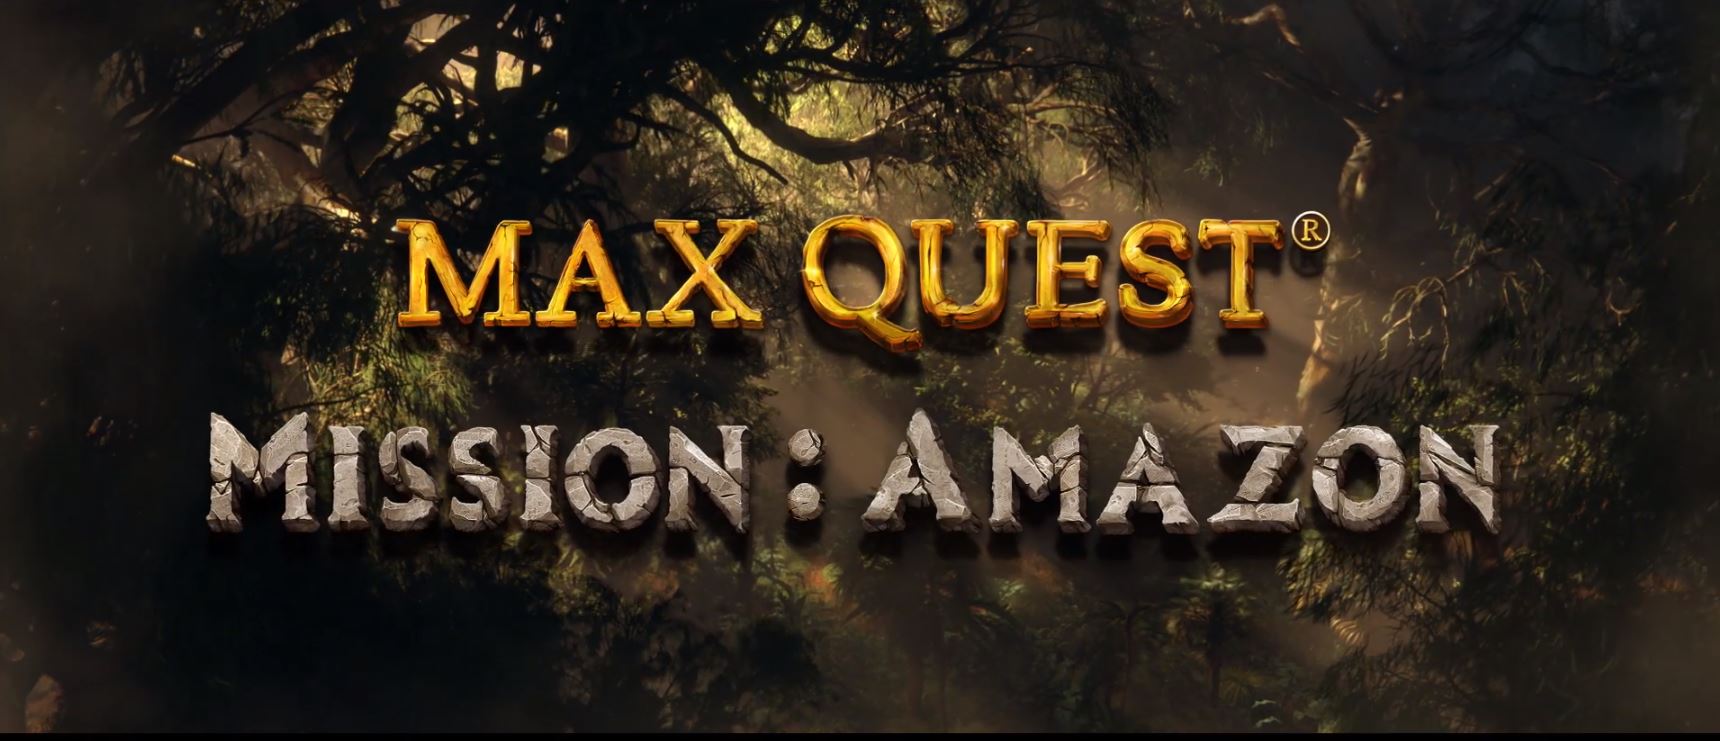 Max Quest Missiya Amazon